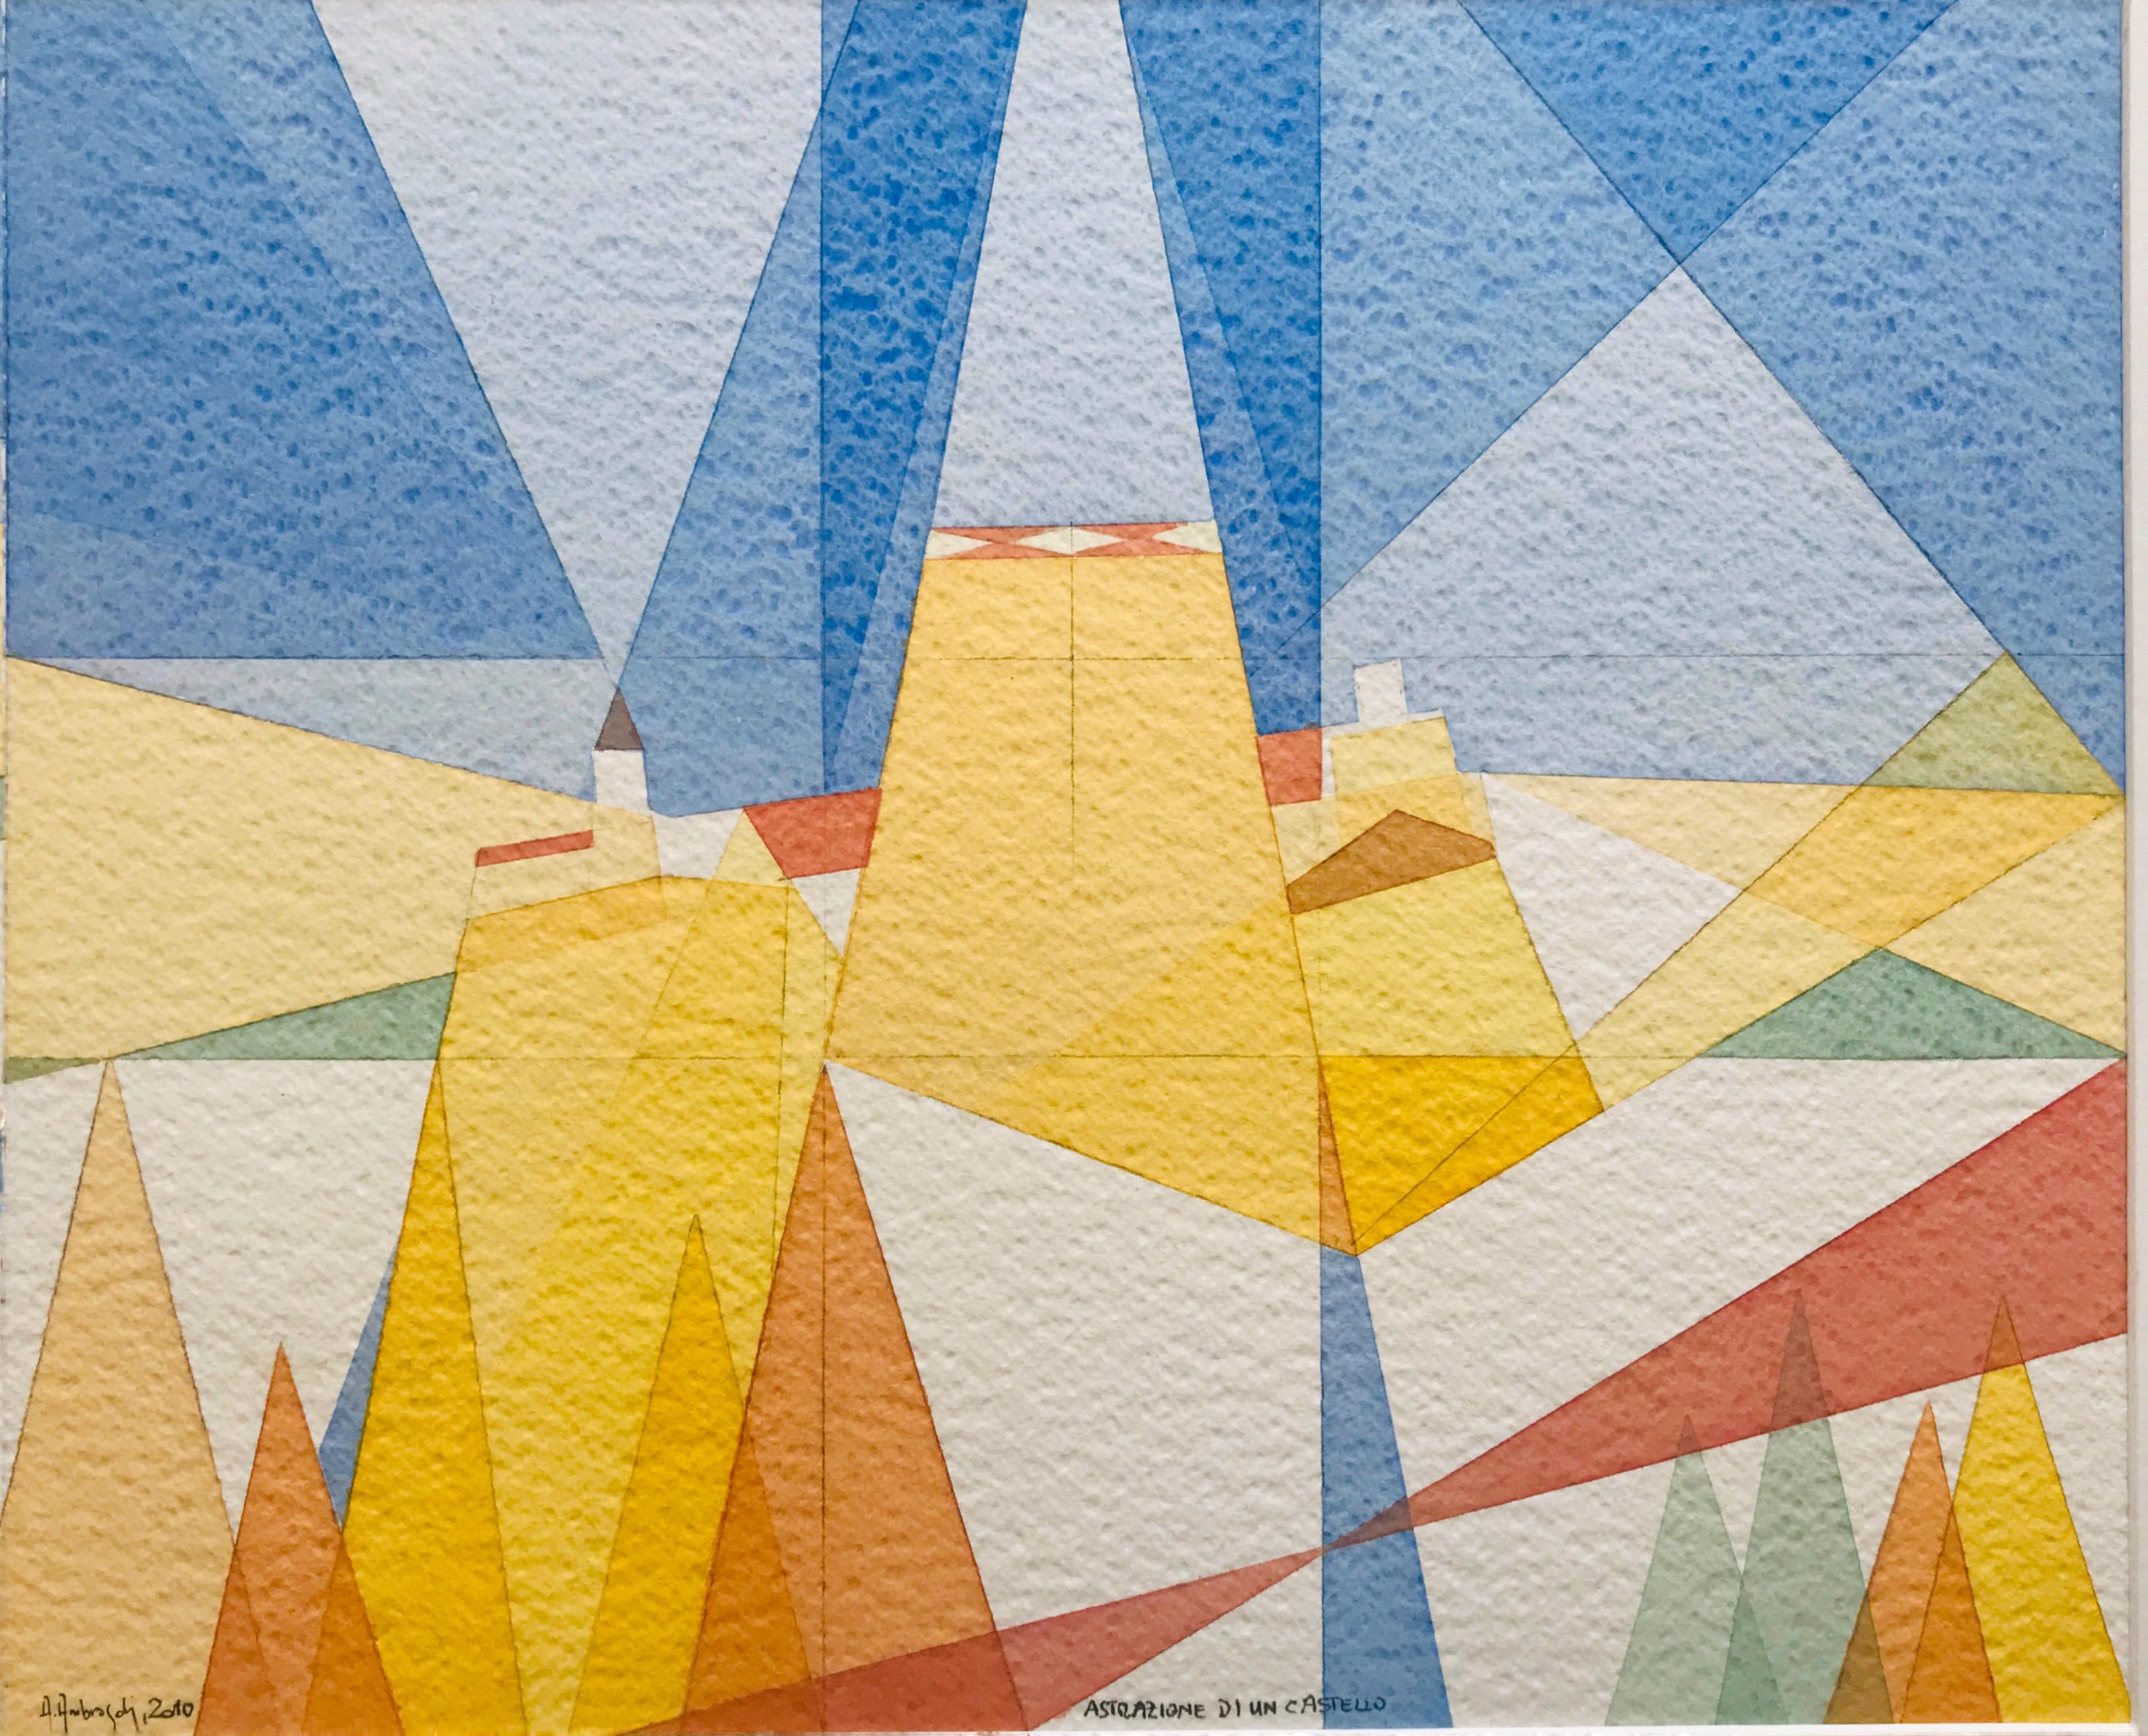 Abstraktion eines Schlosses ist ein Aquarell der zeitgenössischen Künstlerin Annemarie Ambrosoli, gemalt auf 600 g/m² Fabriano-Karton, mit den Maßen 30,5 x 37,5 cm.
Oberfläche des Kartons: grobe Körnung.
Das Bild ist Teil einer Serie von Aquarellen,